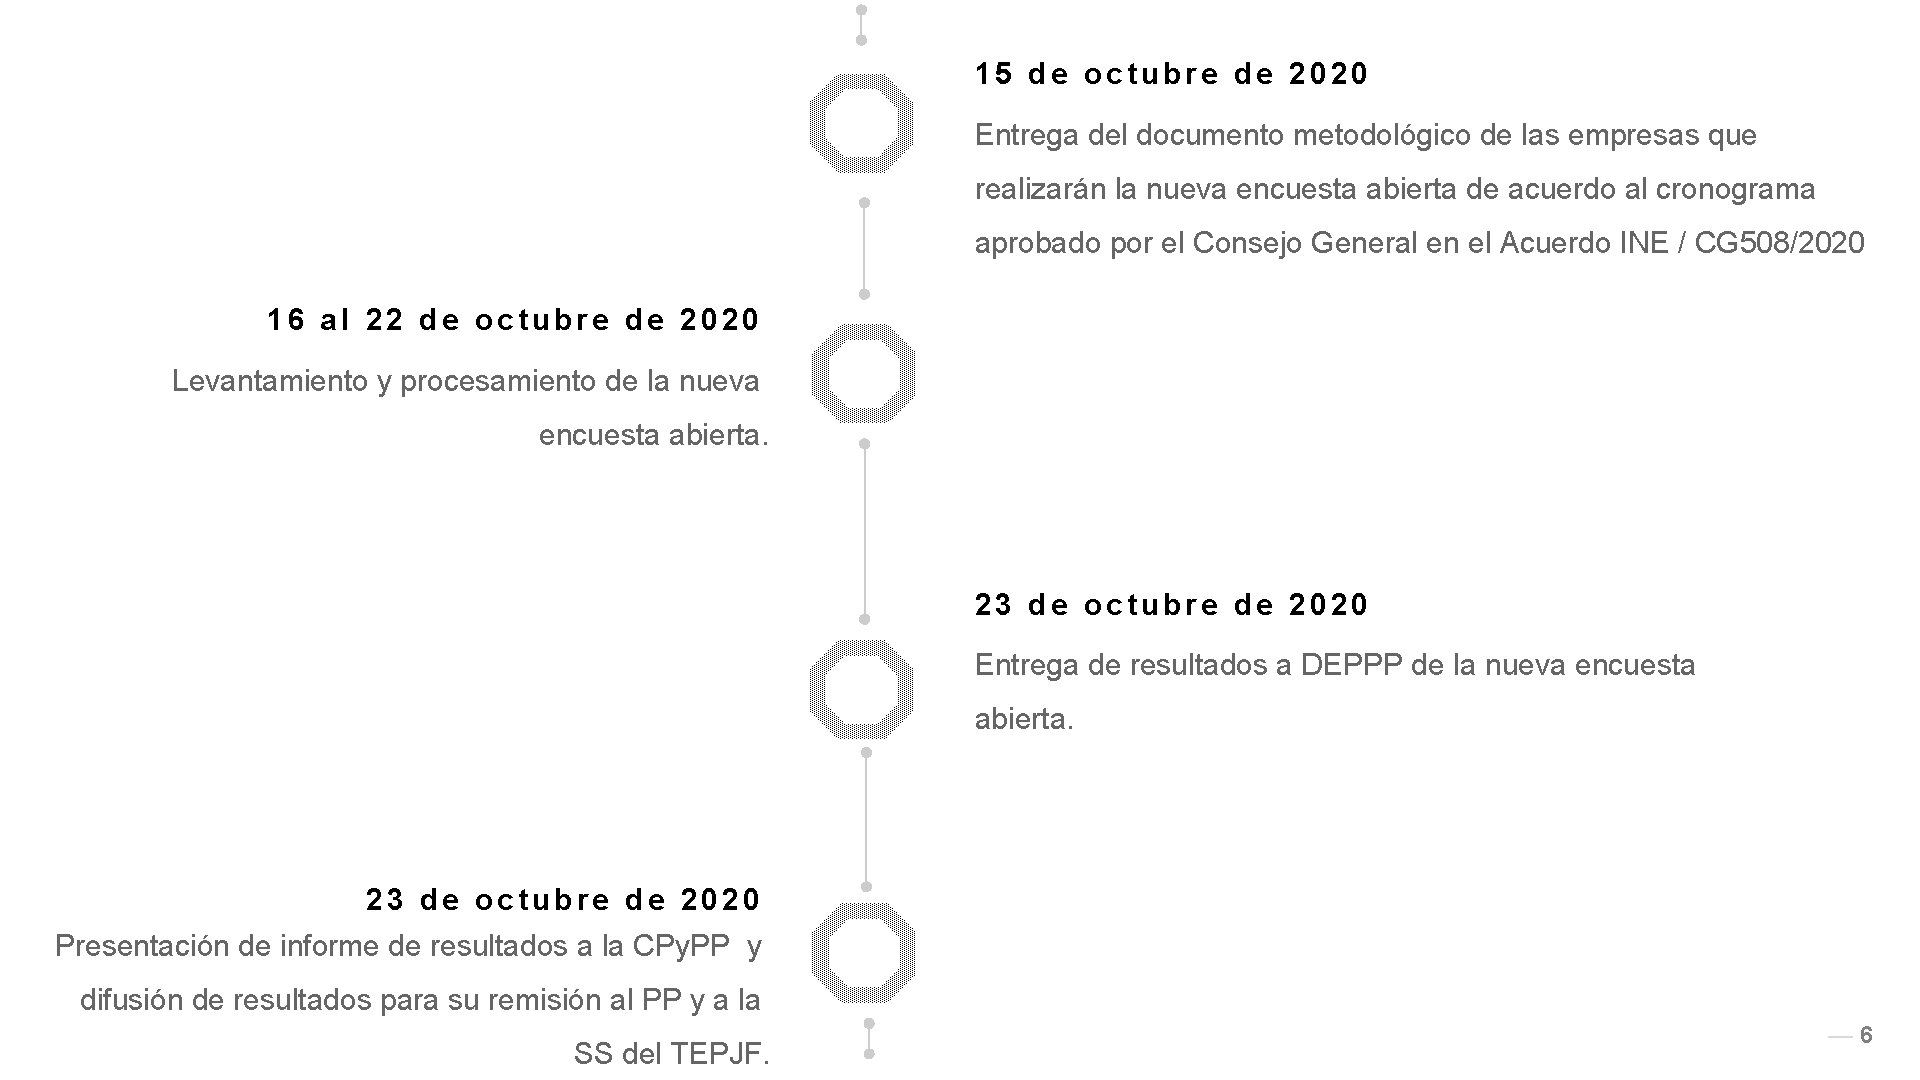 15 de octubre de 2020 Entrega del documento metodológico de las empresas que realizarán